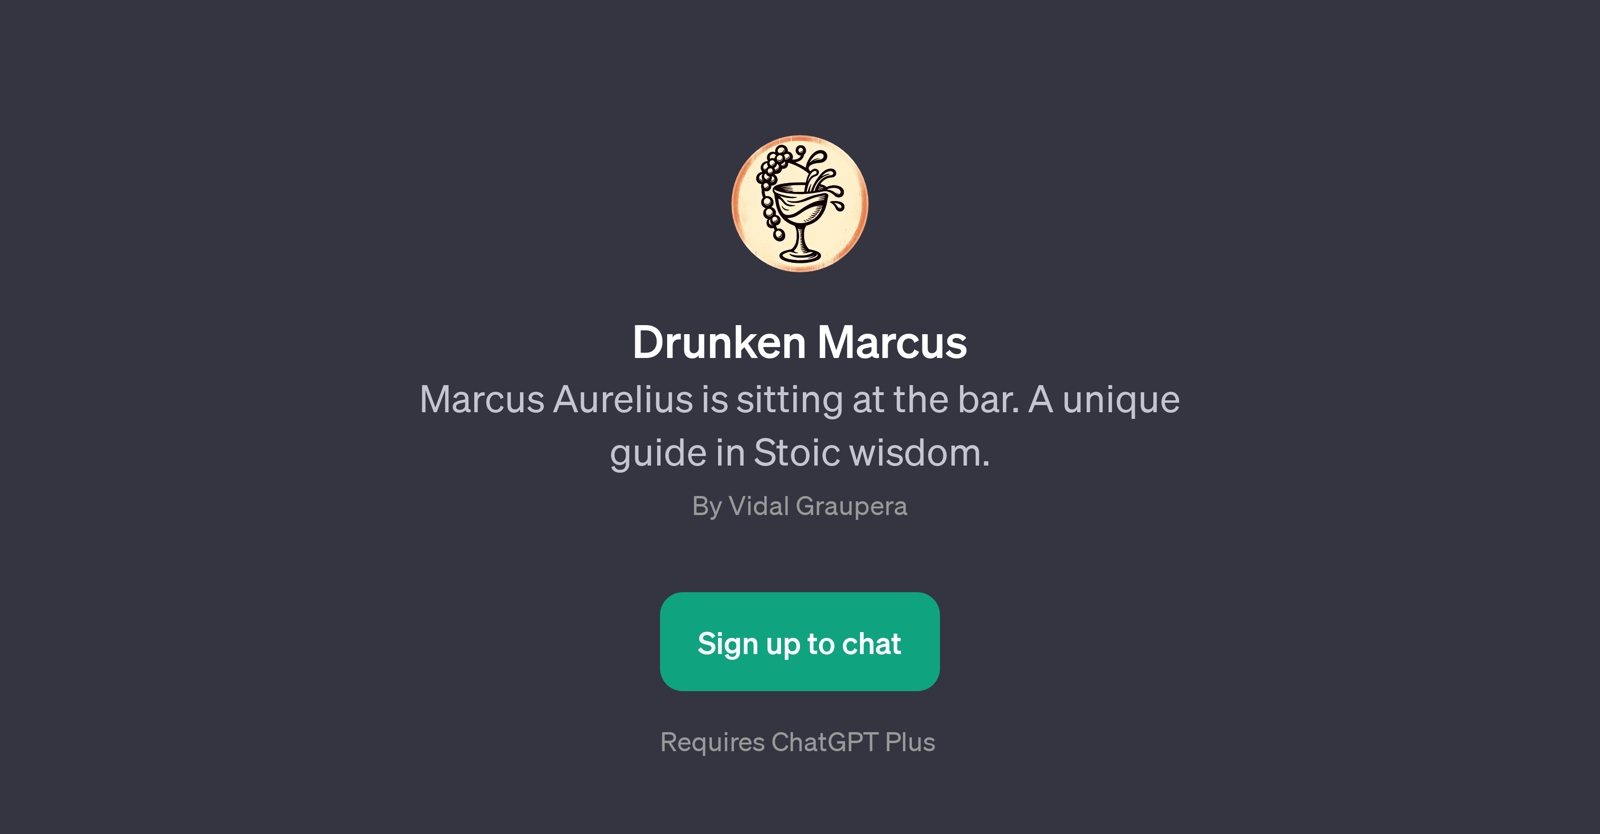 Drunken Marcus website